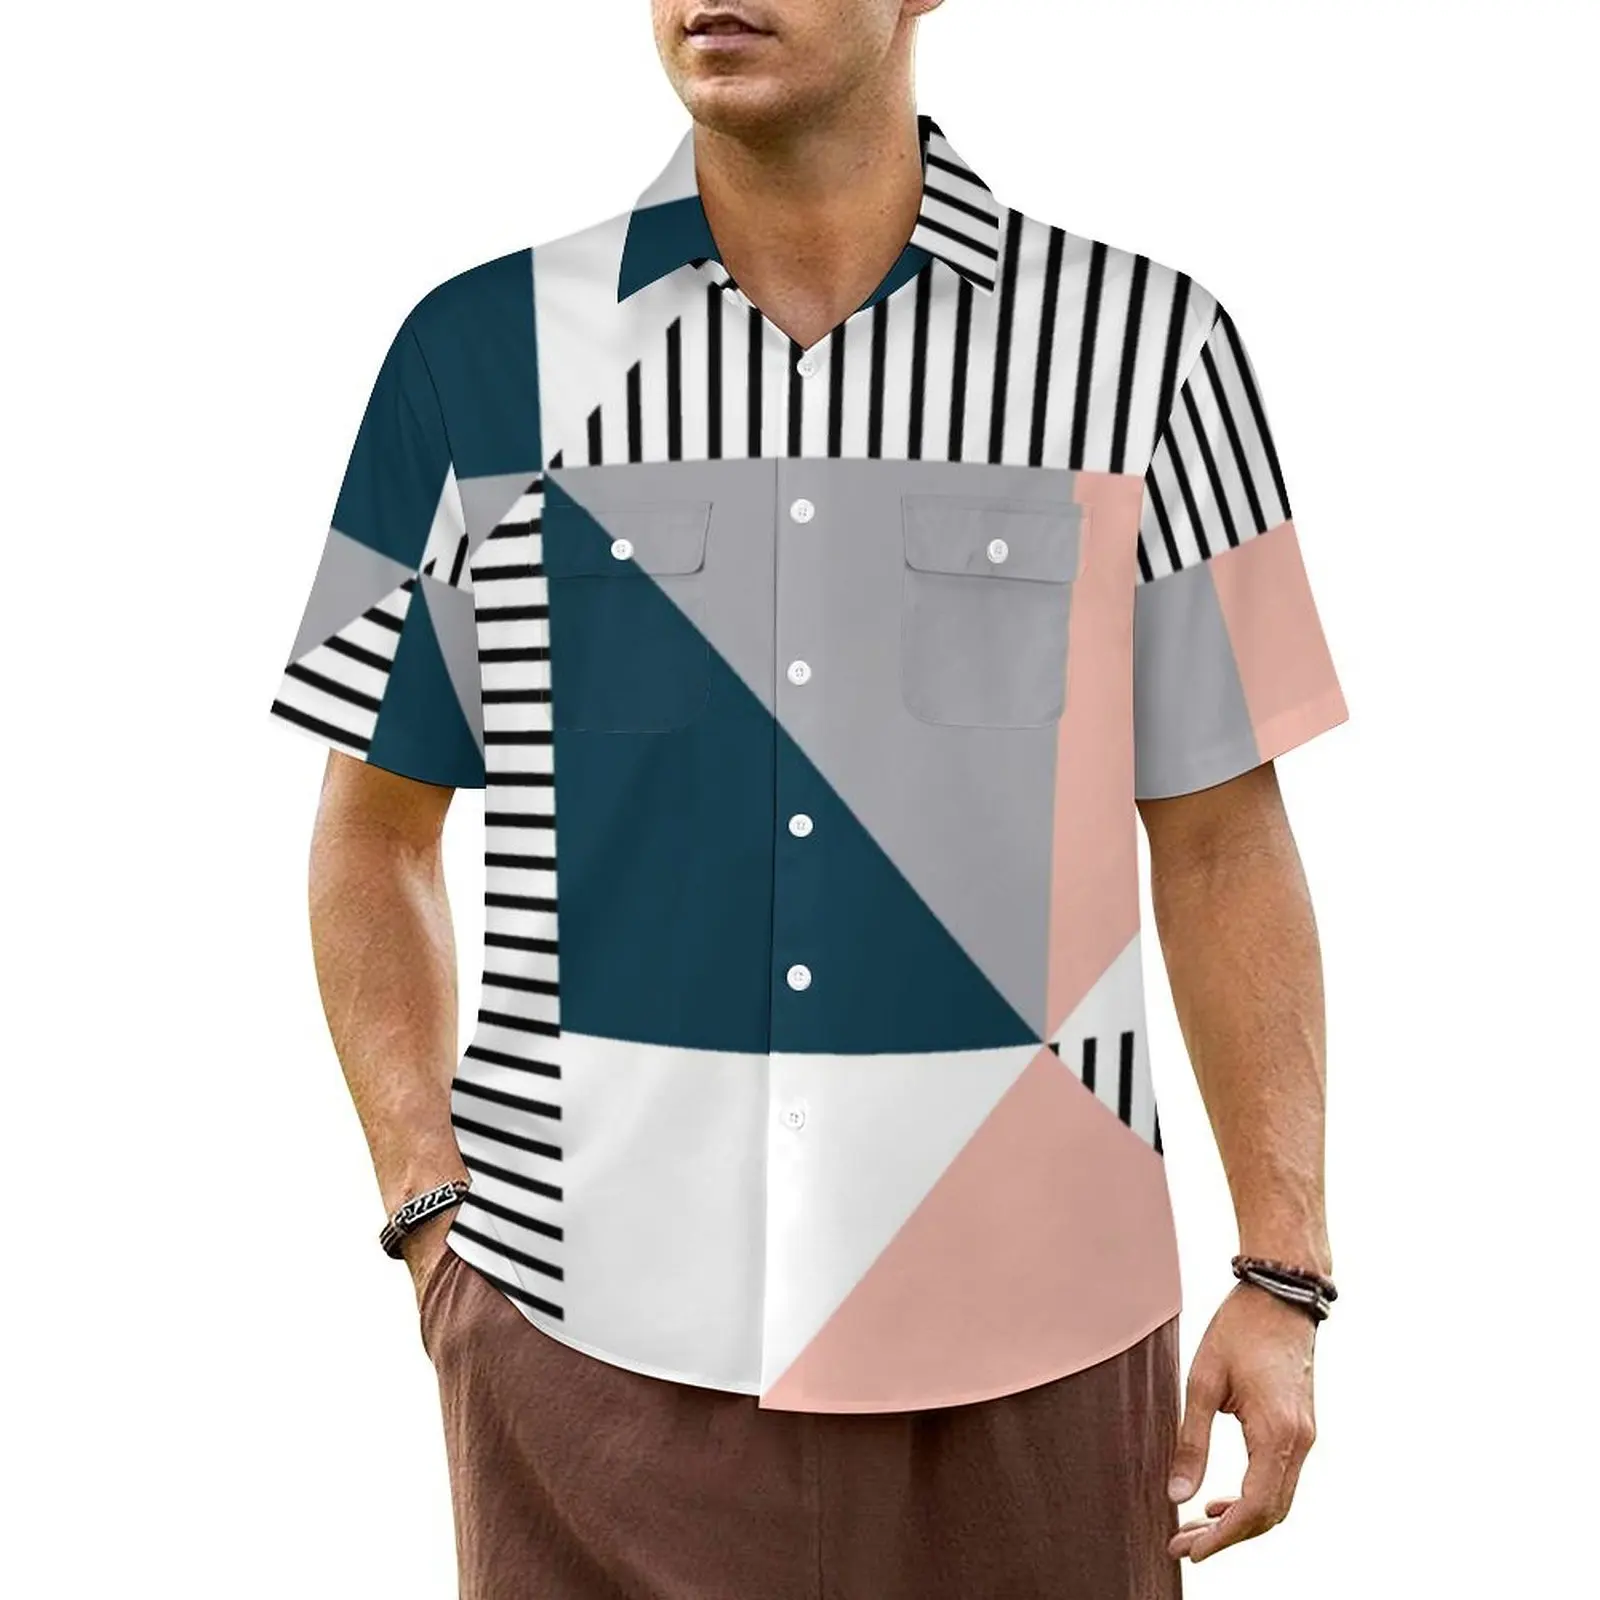 

Гавайская рубашка в скандинавском стиле для мужчин, пляжные повседневные рубашки с абстрактным геометрическим рисунком, удобные свободные блузки с коротким рукавом